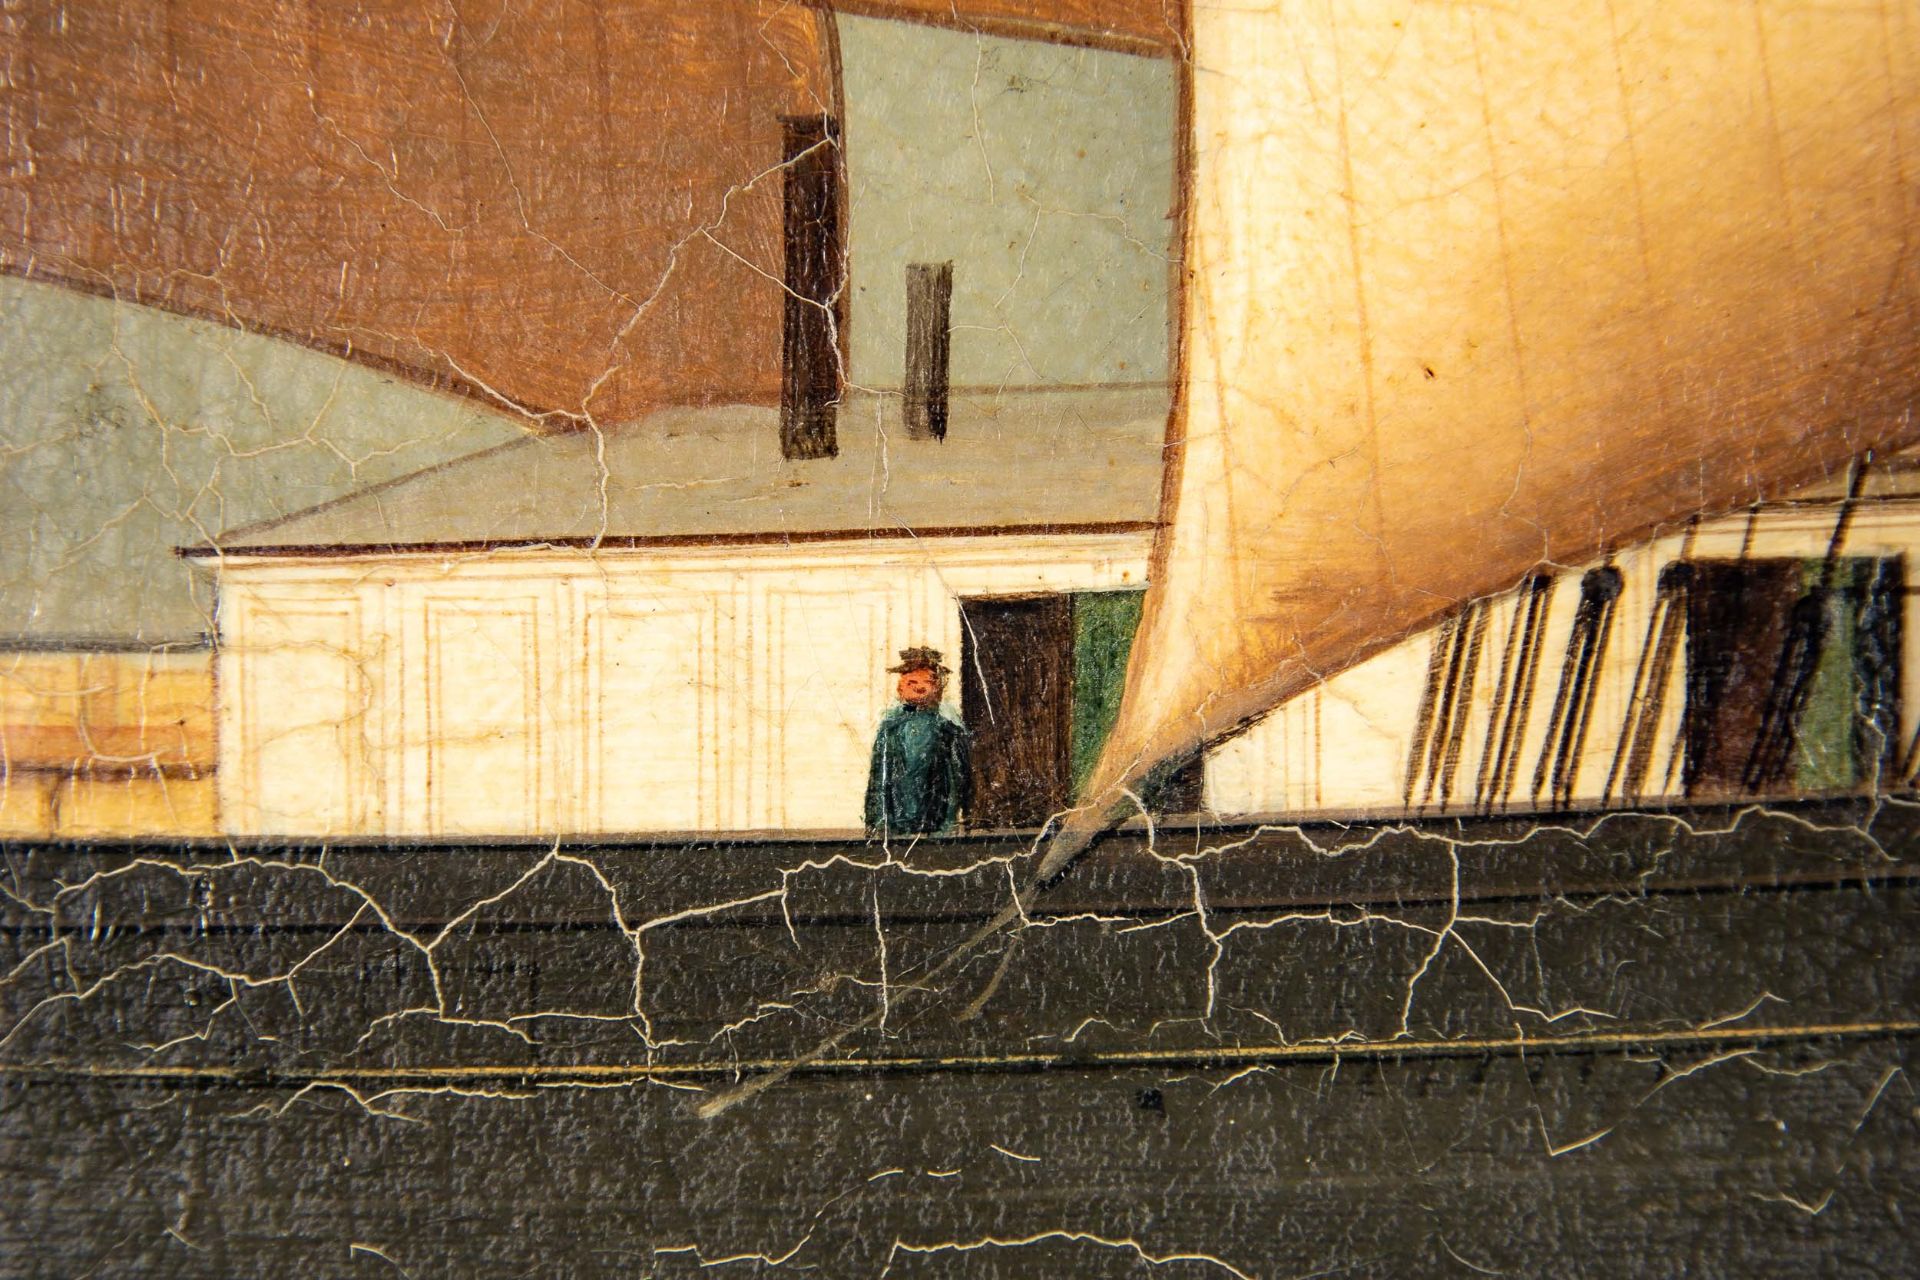 Kapitänsbild des Vollschiffes "Industrie" (1872 in Holland gebaut), qualitativ hochwertiges Gemälde - Image 14 of 24